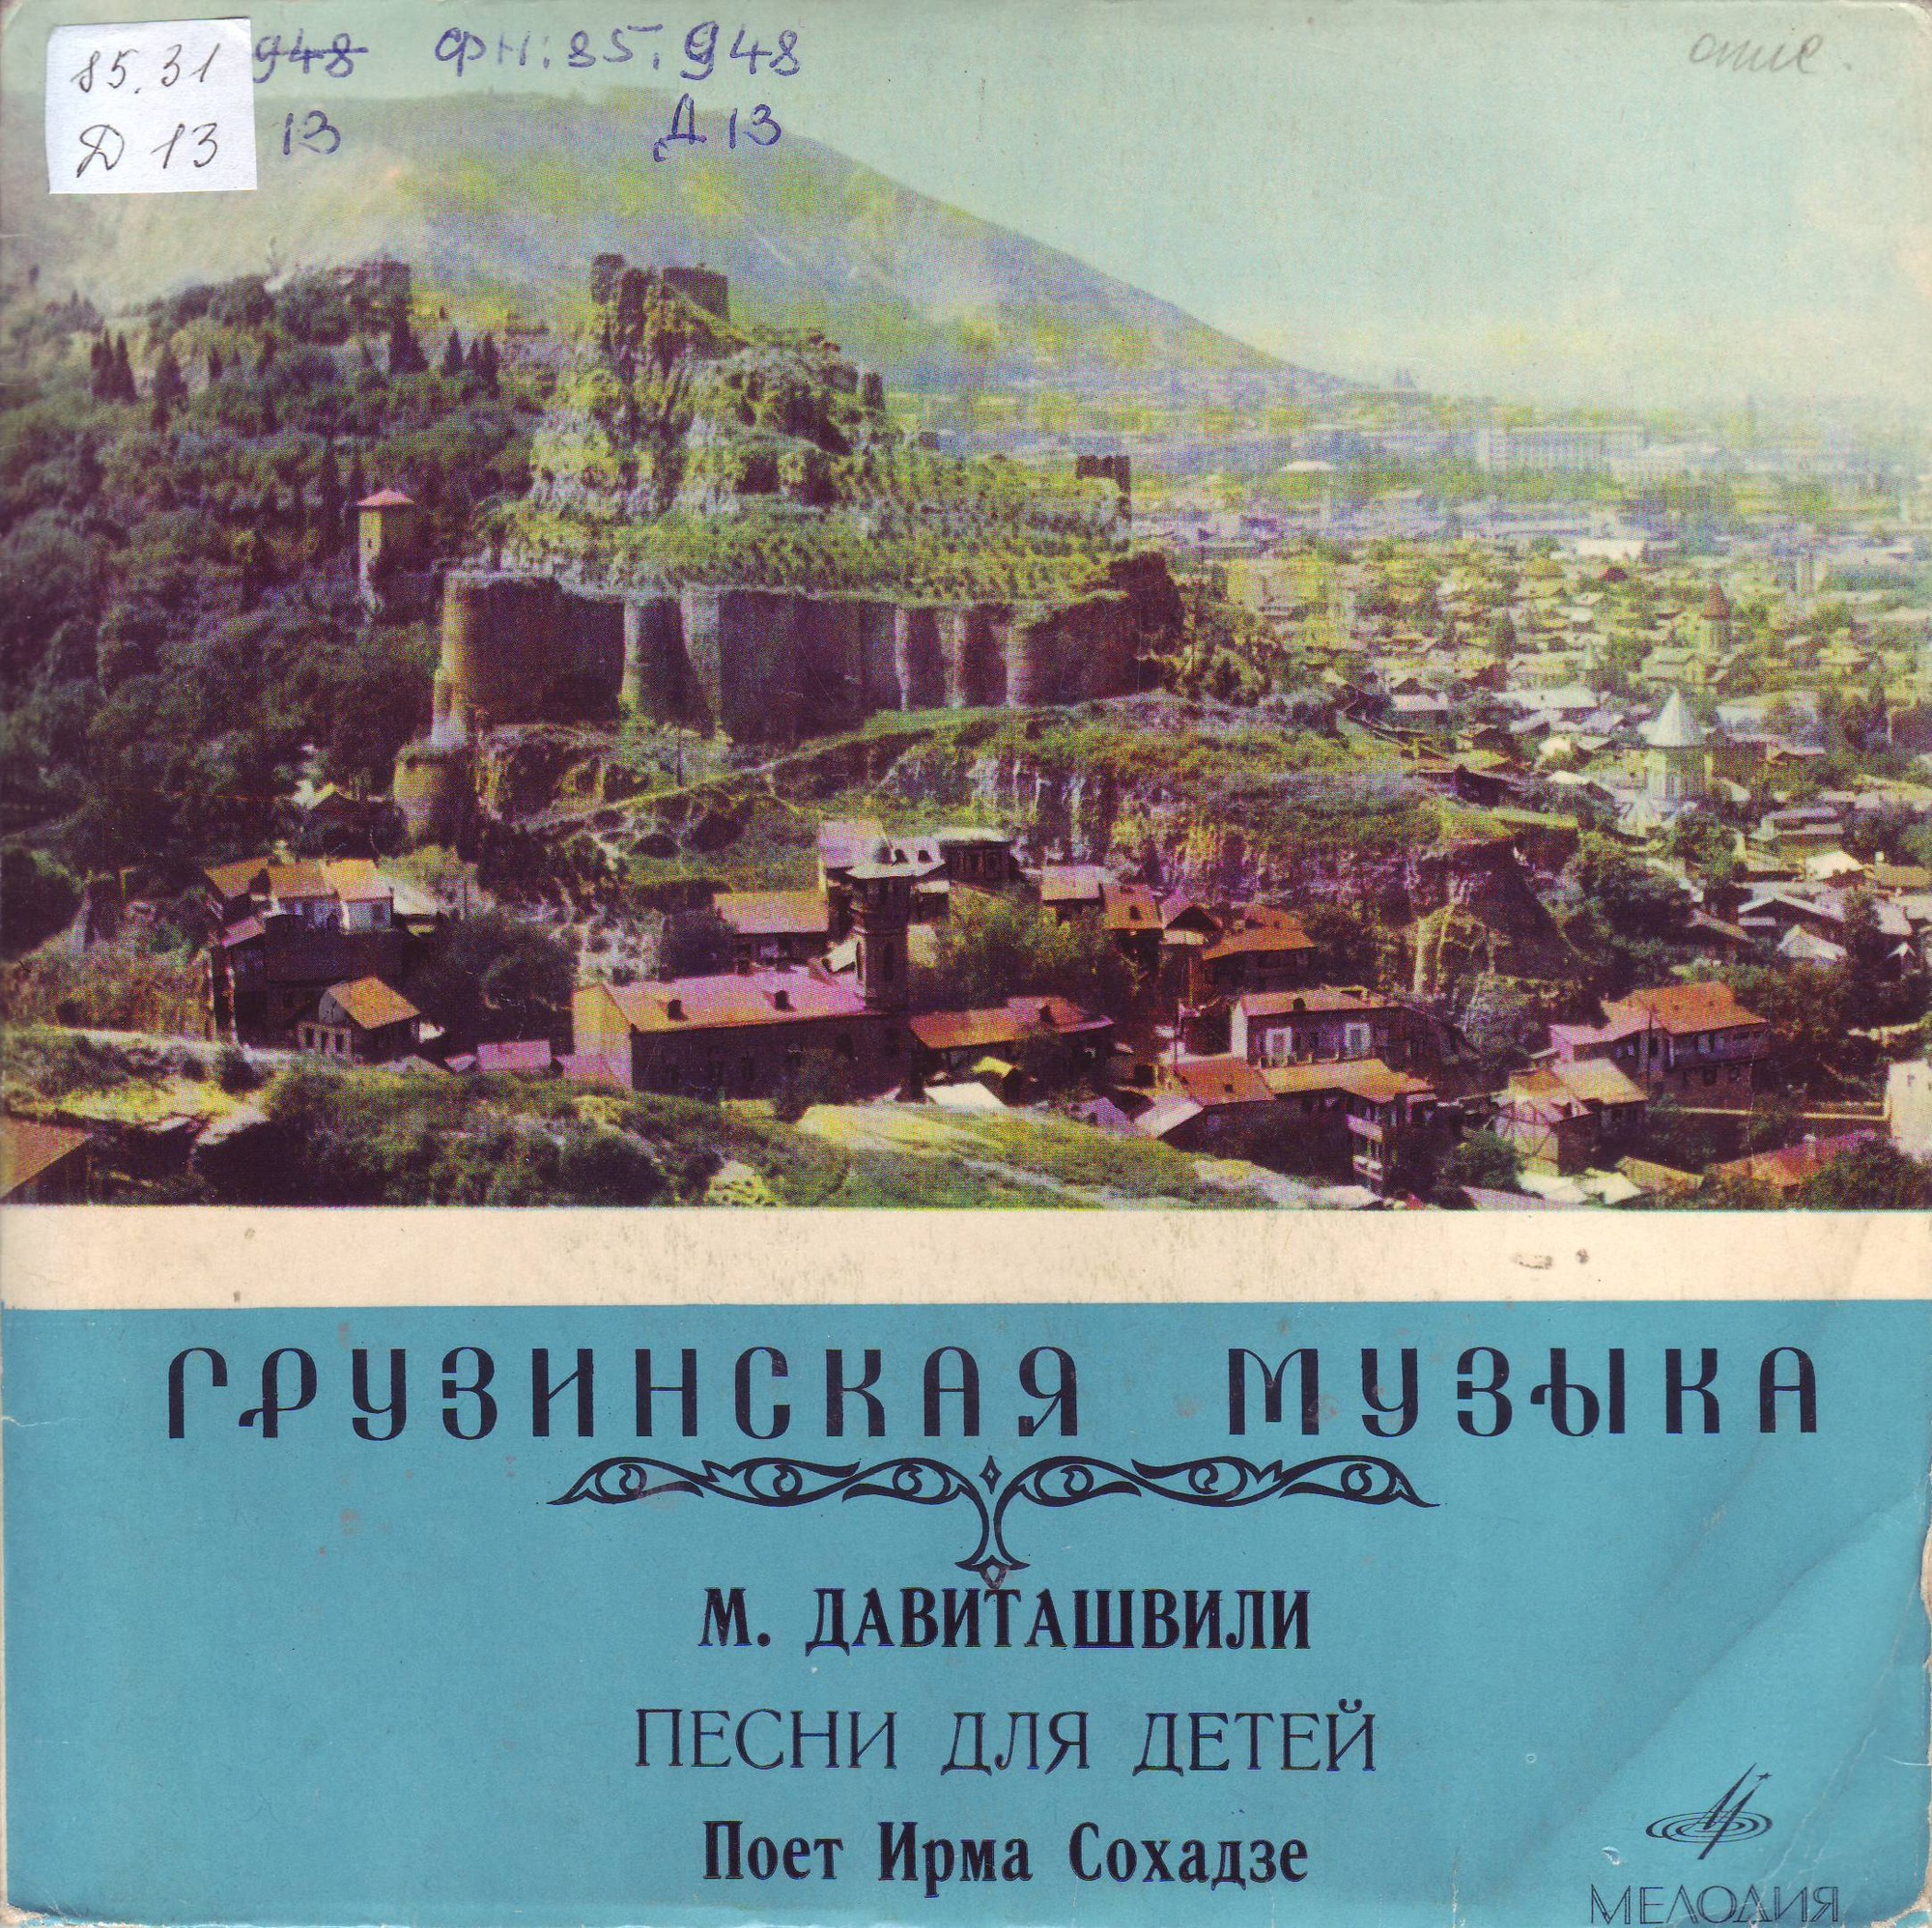 Песни М. Давиташвили поет Ирма СОХАДЗЕ (на грузинском языке)